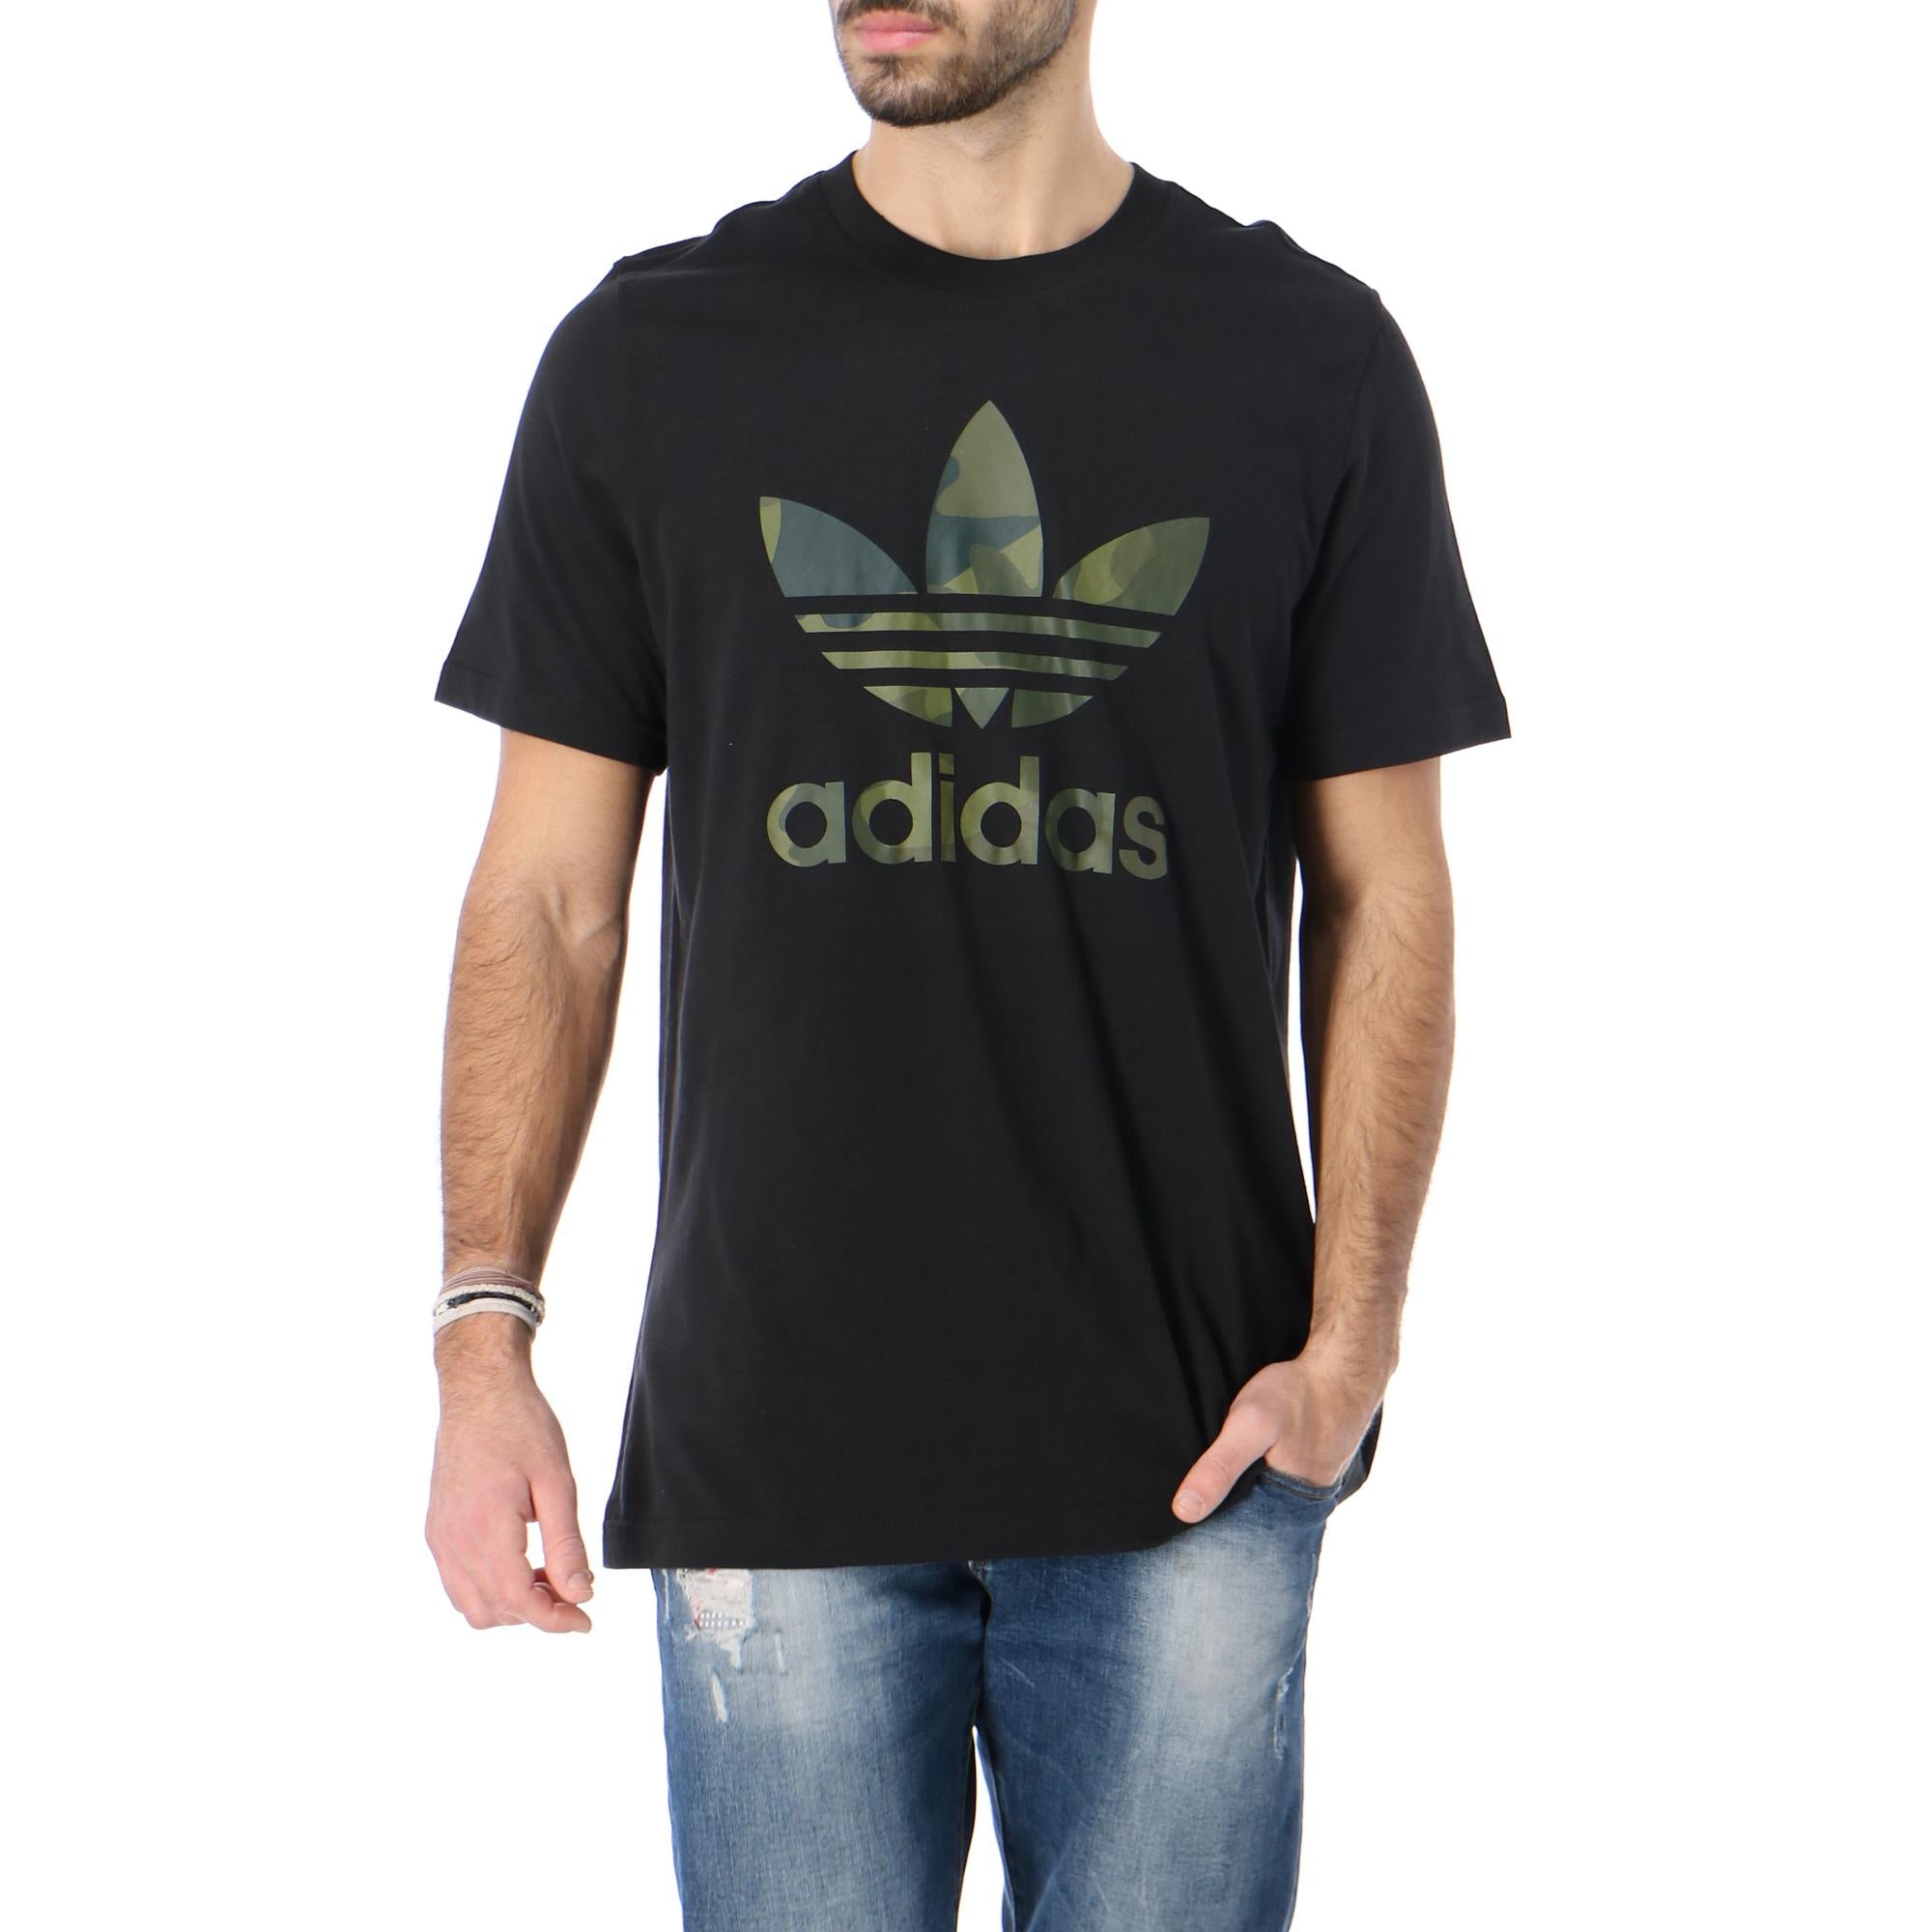 Adidas Originals T-Shirt FM3338 Trefoil – BLACK TROVISO1883 Camou